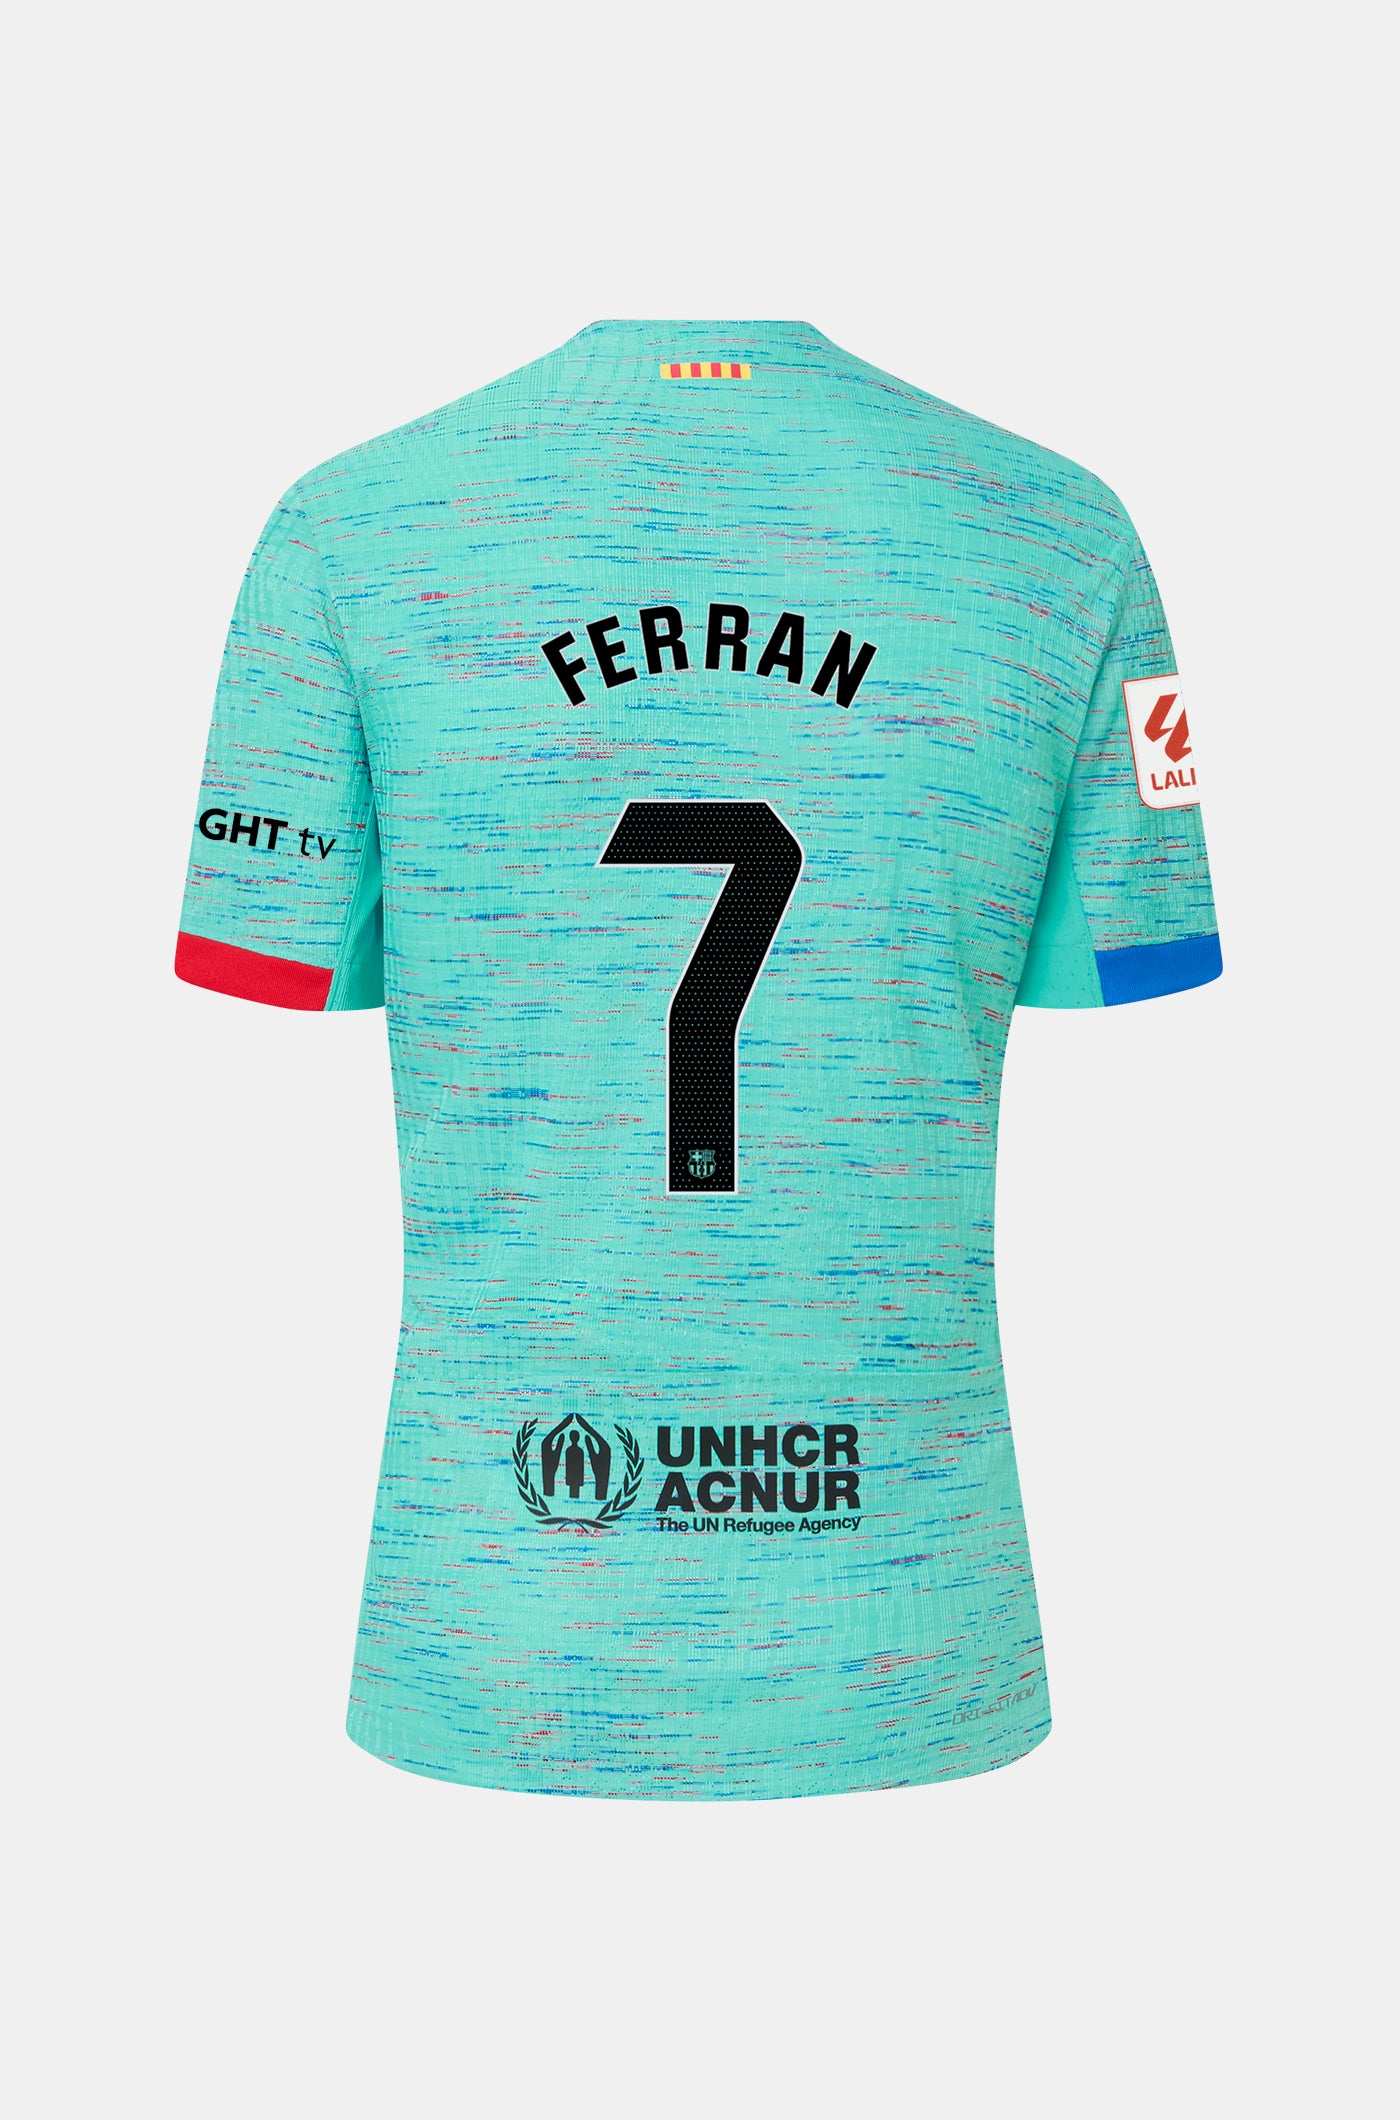 LFP FC Barcelona third shirt 23/24  - FERRAN